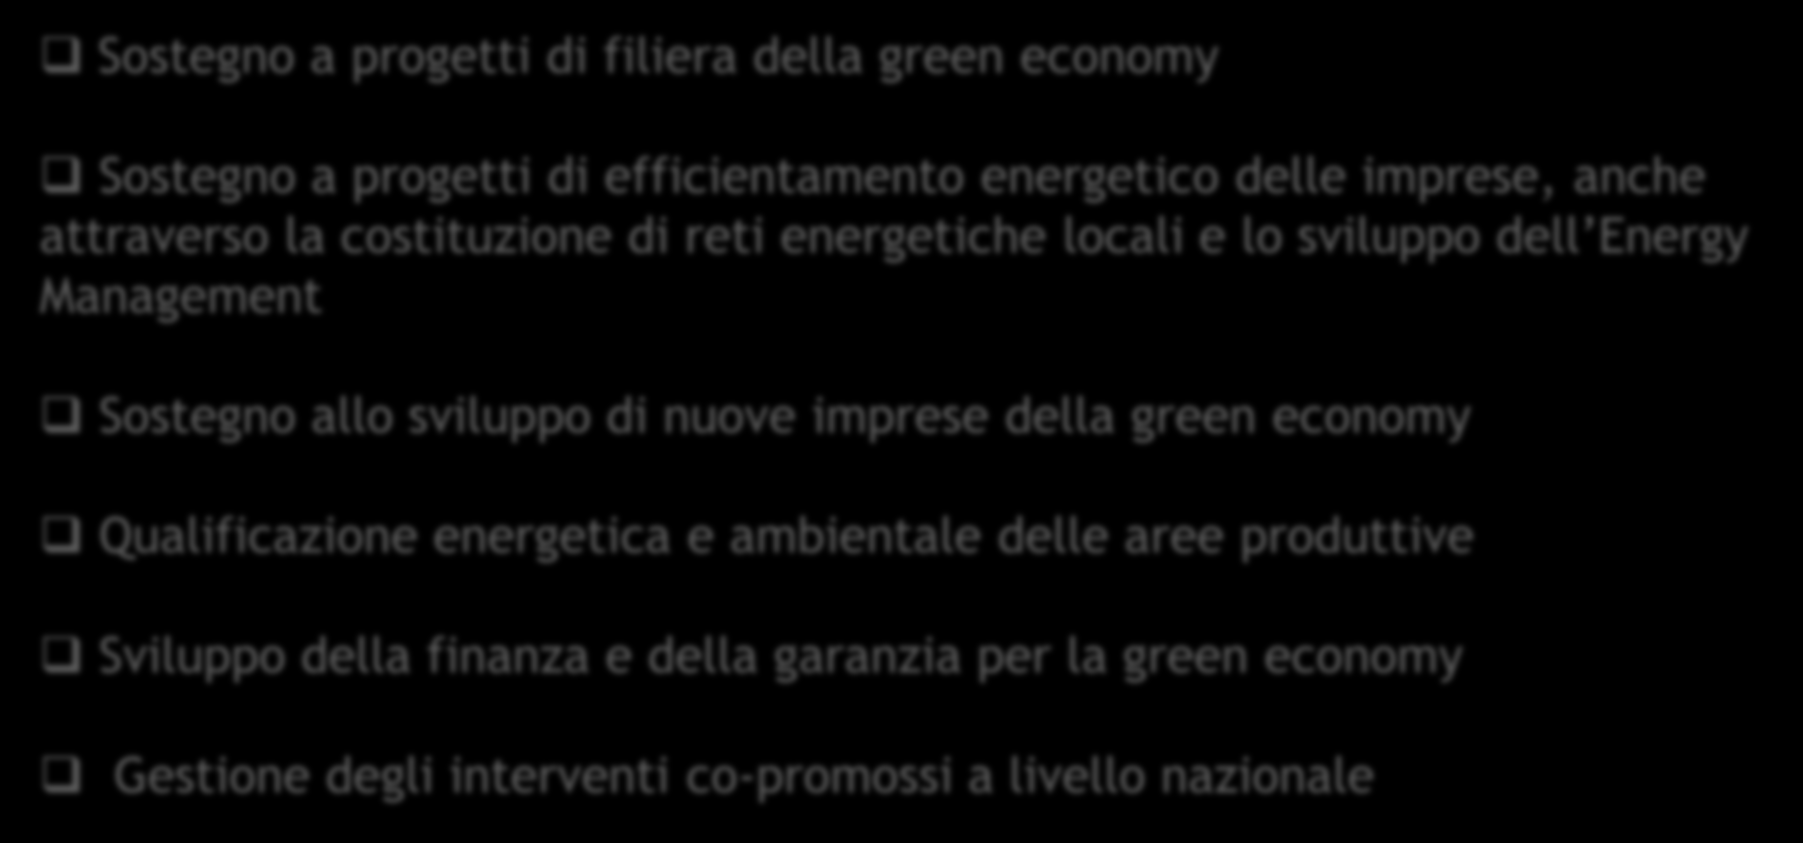 Le future linee di intervento della Regione Emilia-Romagna Le prospettive di intervento e supporto finanziario sono ben delineate nella proposta di Piano triennale di attuazione 2011-2013 del PER